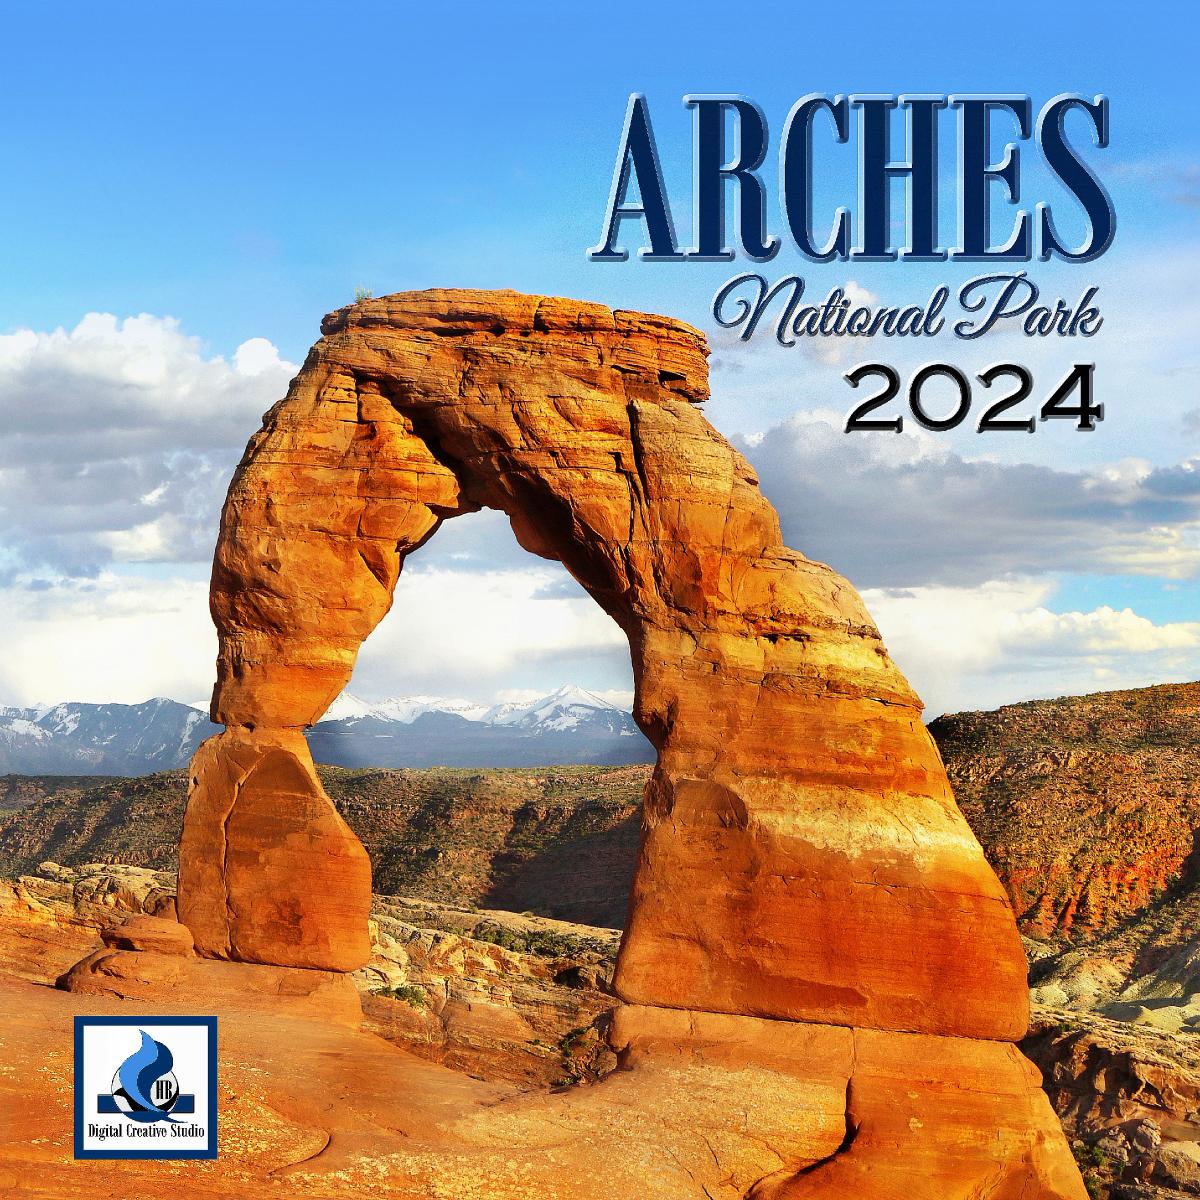 2024 Arches National Park SQ Wall Calendar